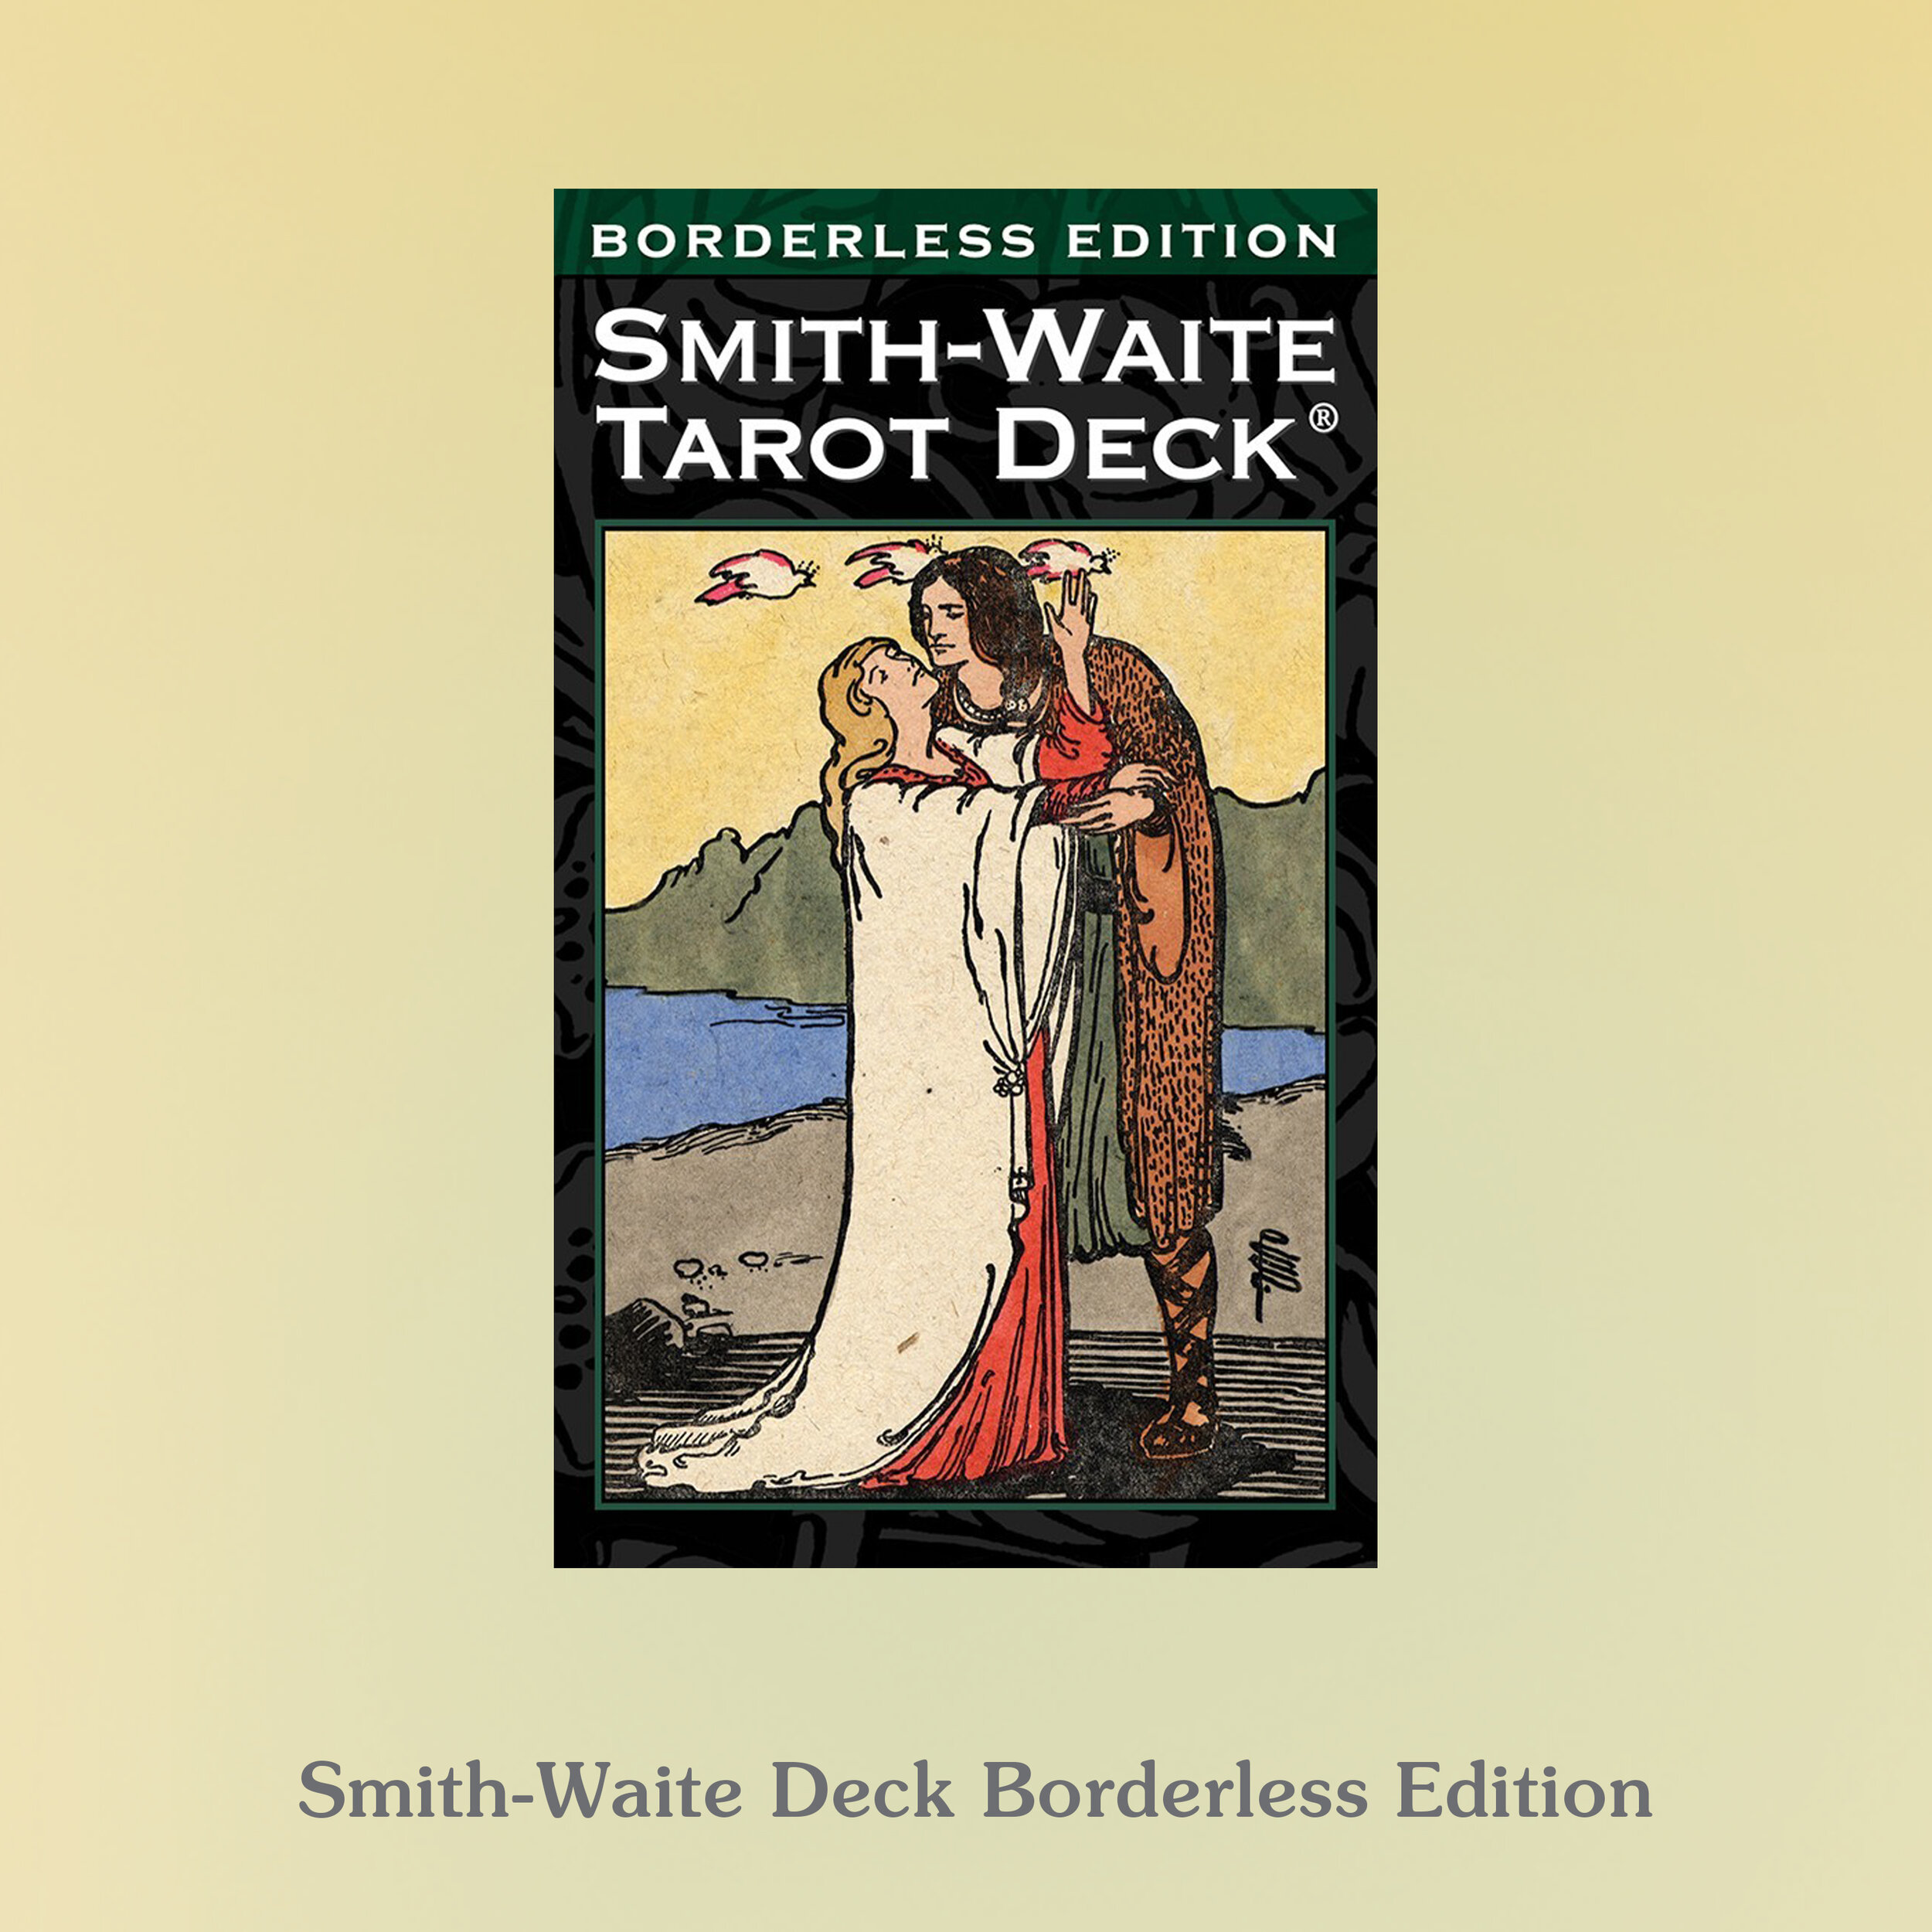 Smith-Waite Deck, Borderless Edition